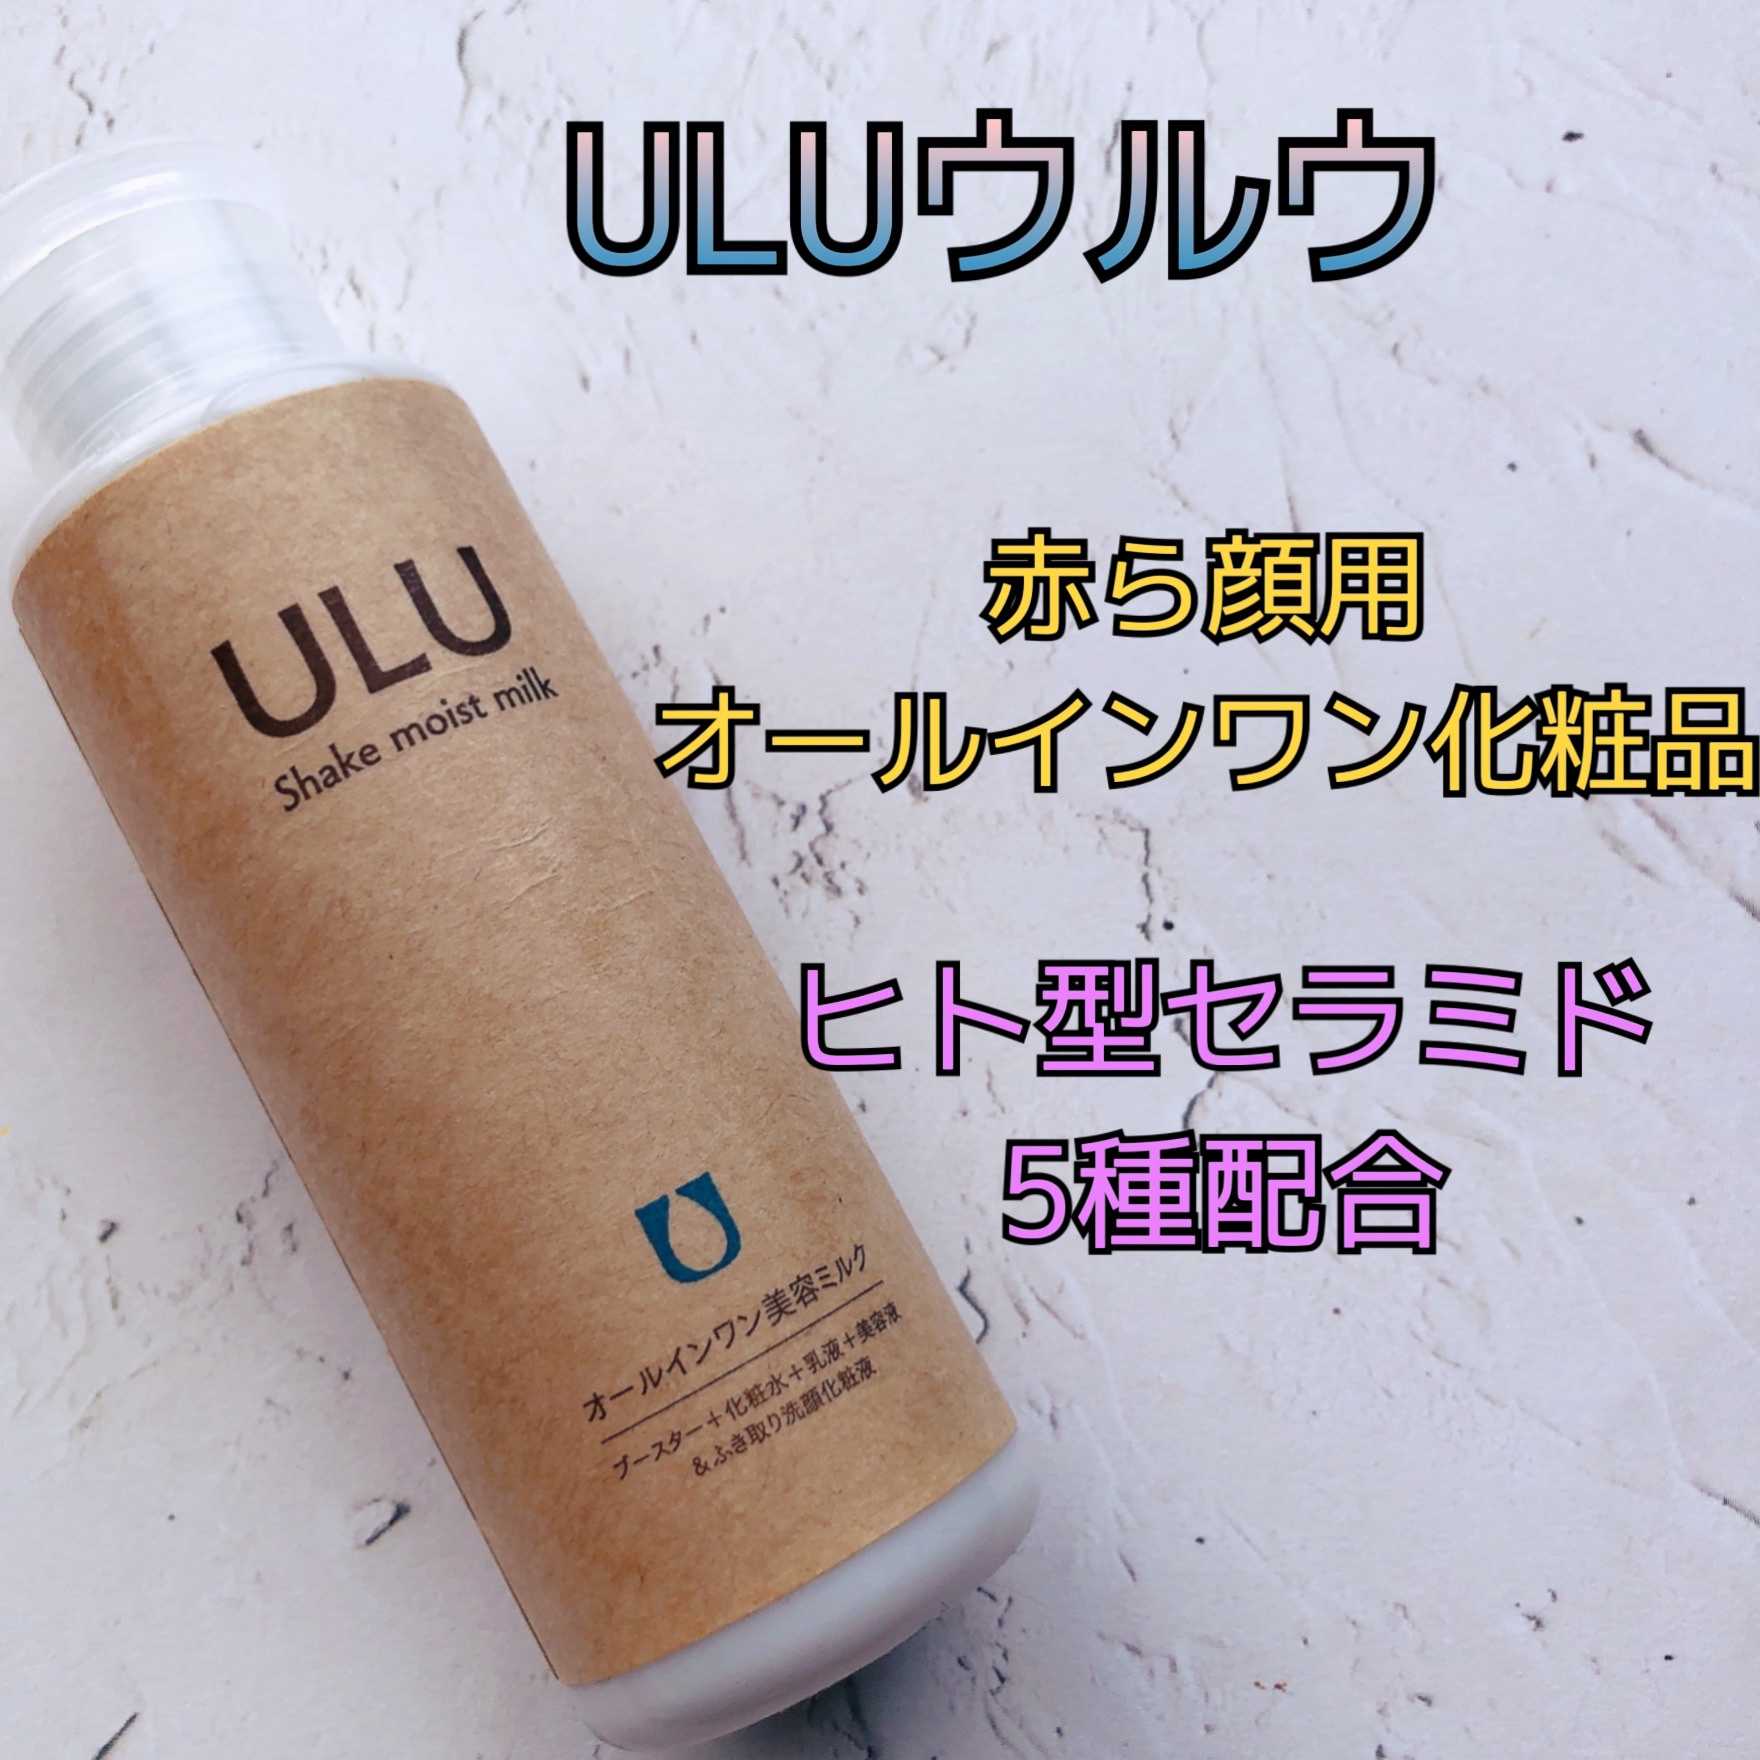 スキンケア/基礎化粧品ULU シェイクモイスト 美容液 110ml